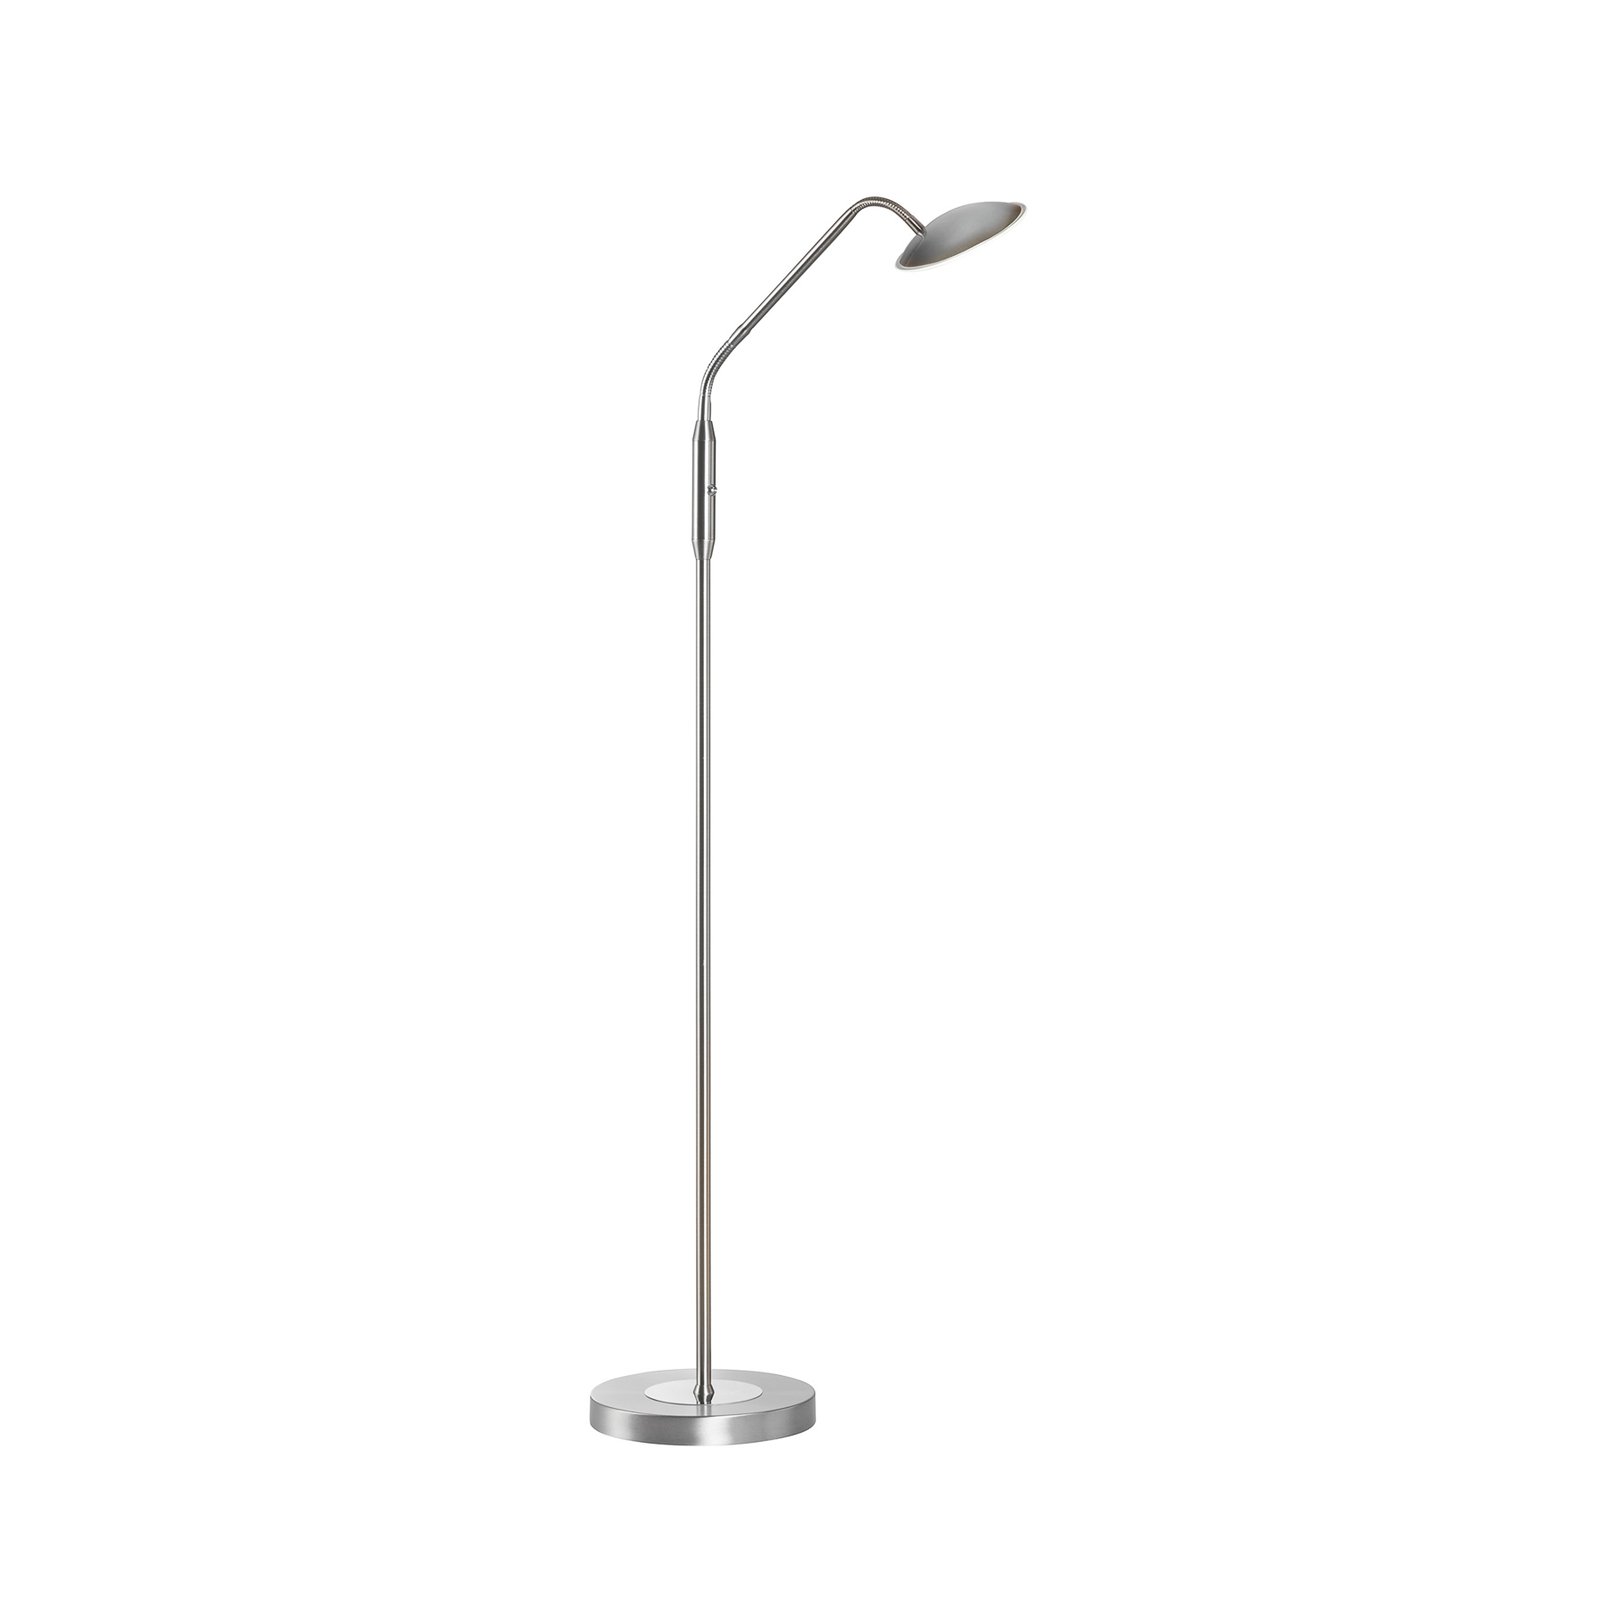 LED-golvlampa Tallri, nickelfärgad, höjd 135 cm, CCT